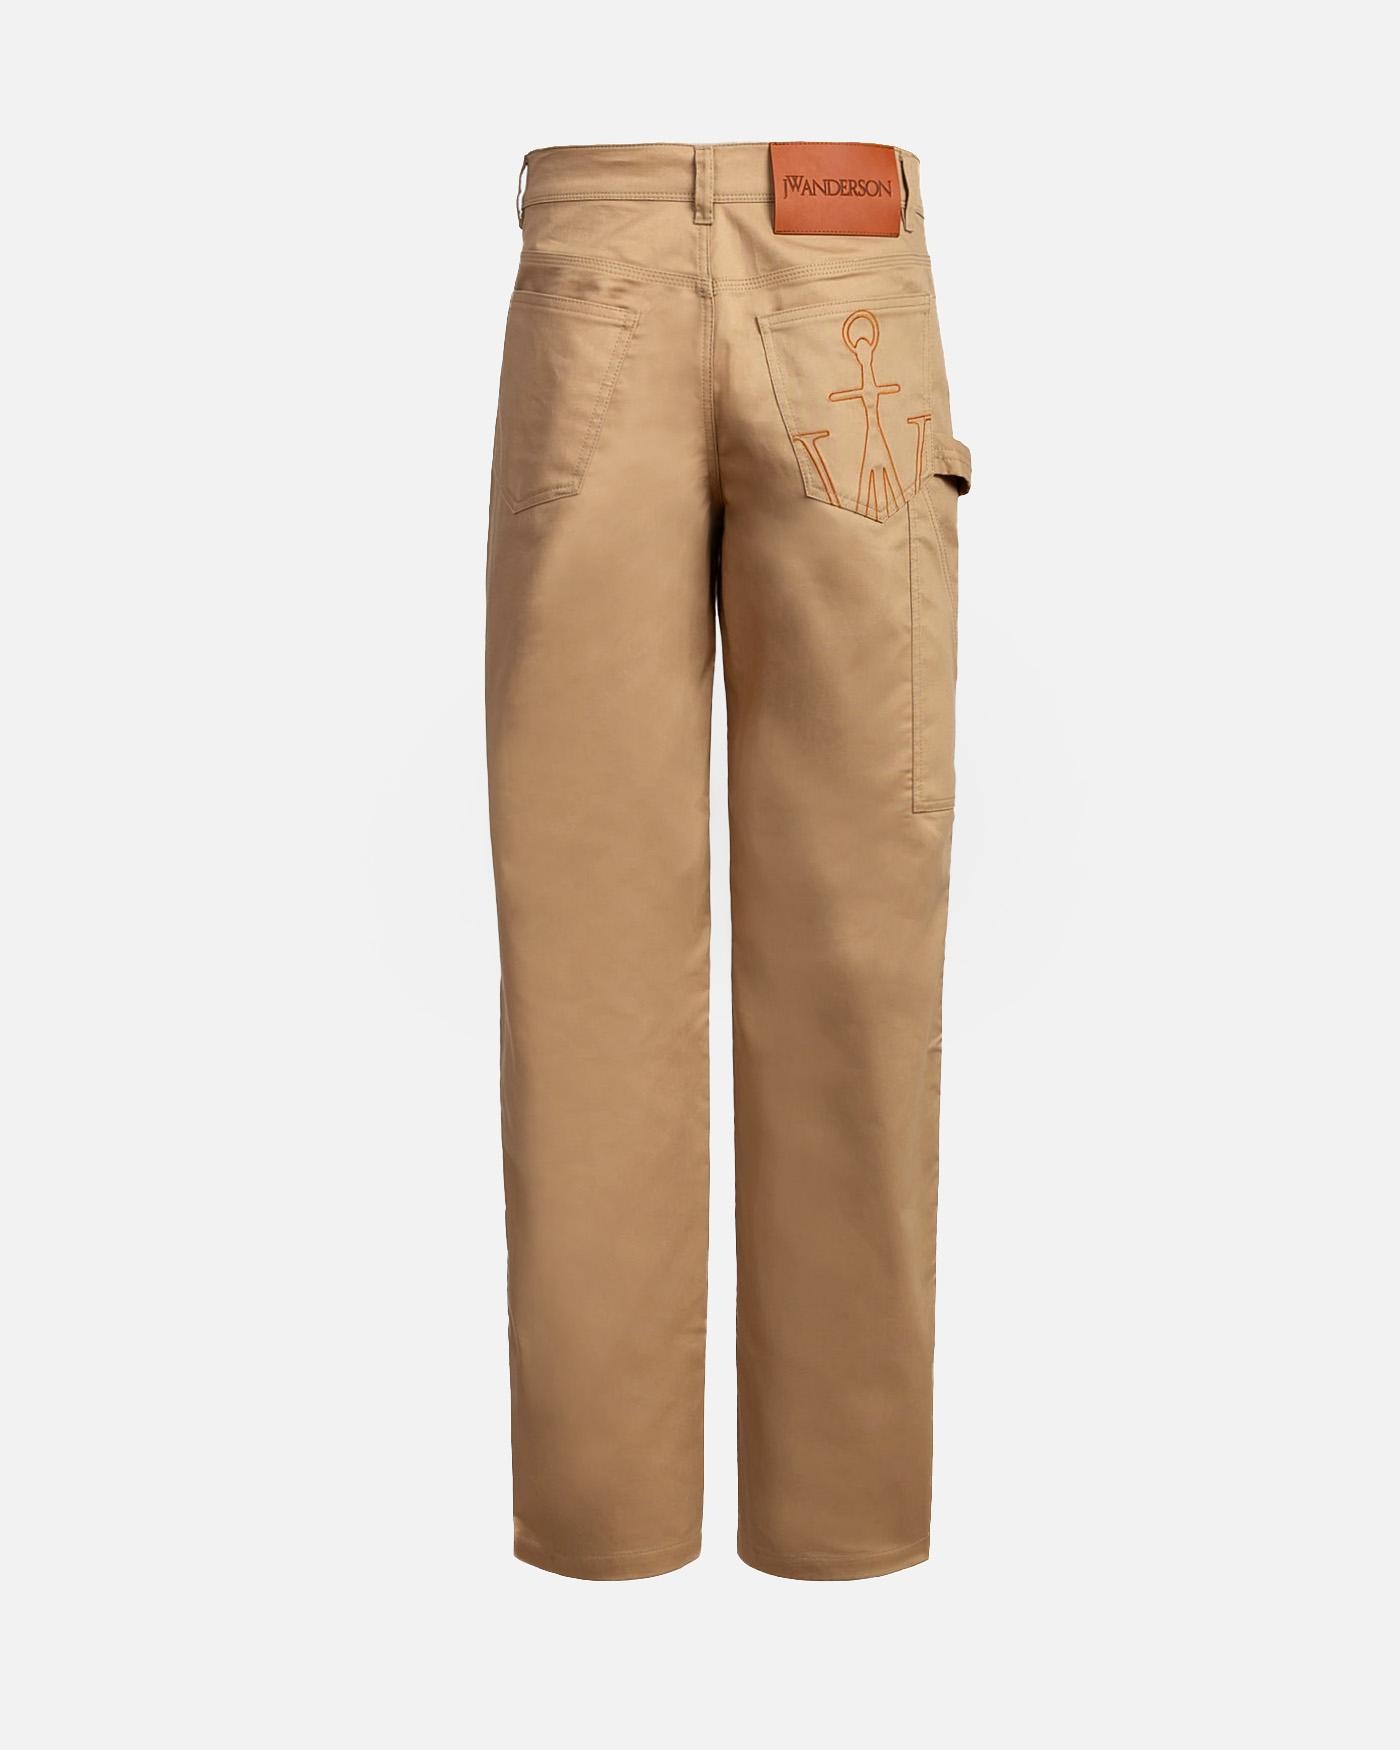 Pantalon Jw Anderson Workwear Chino 1